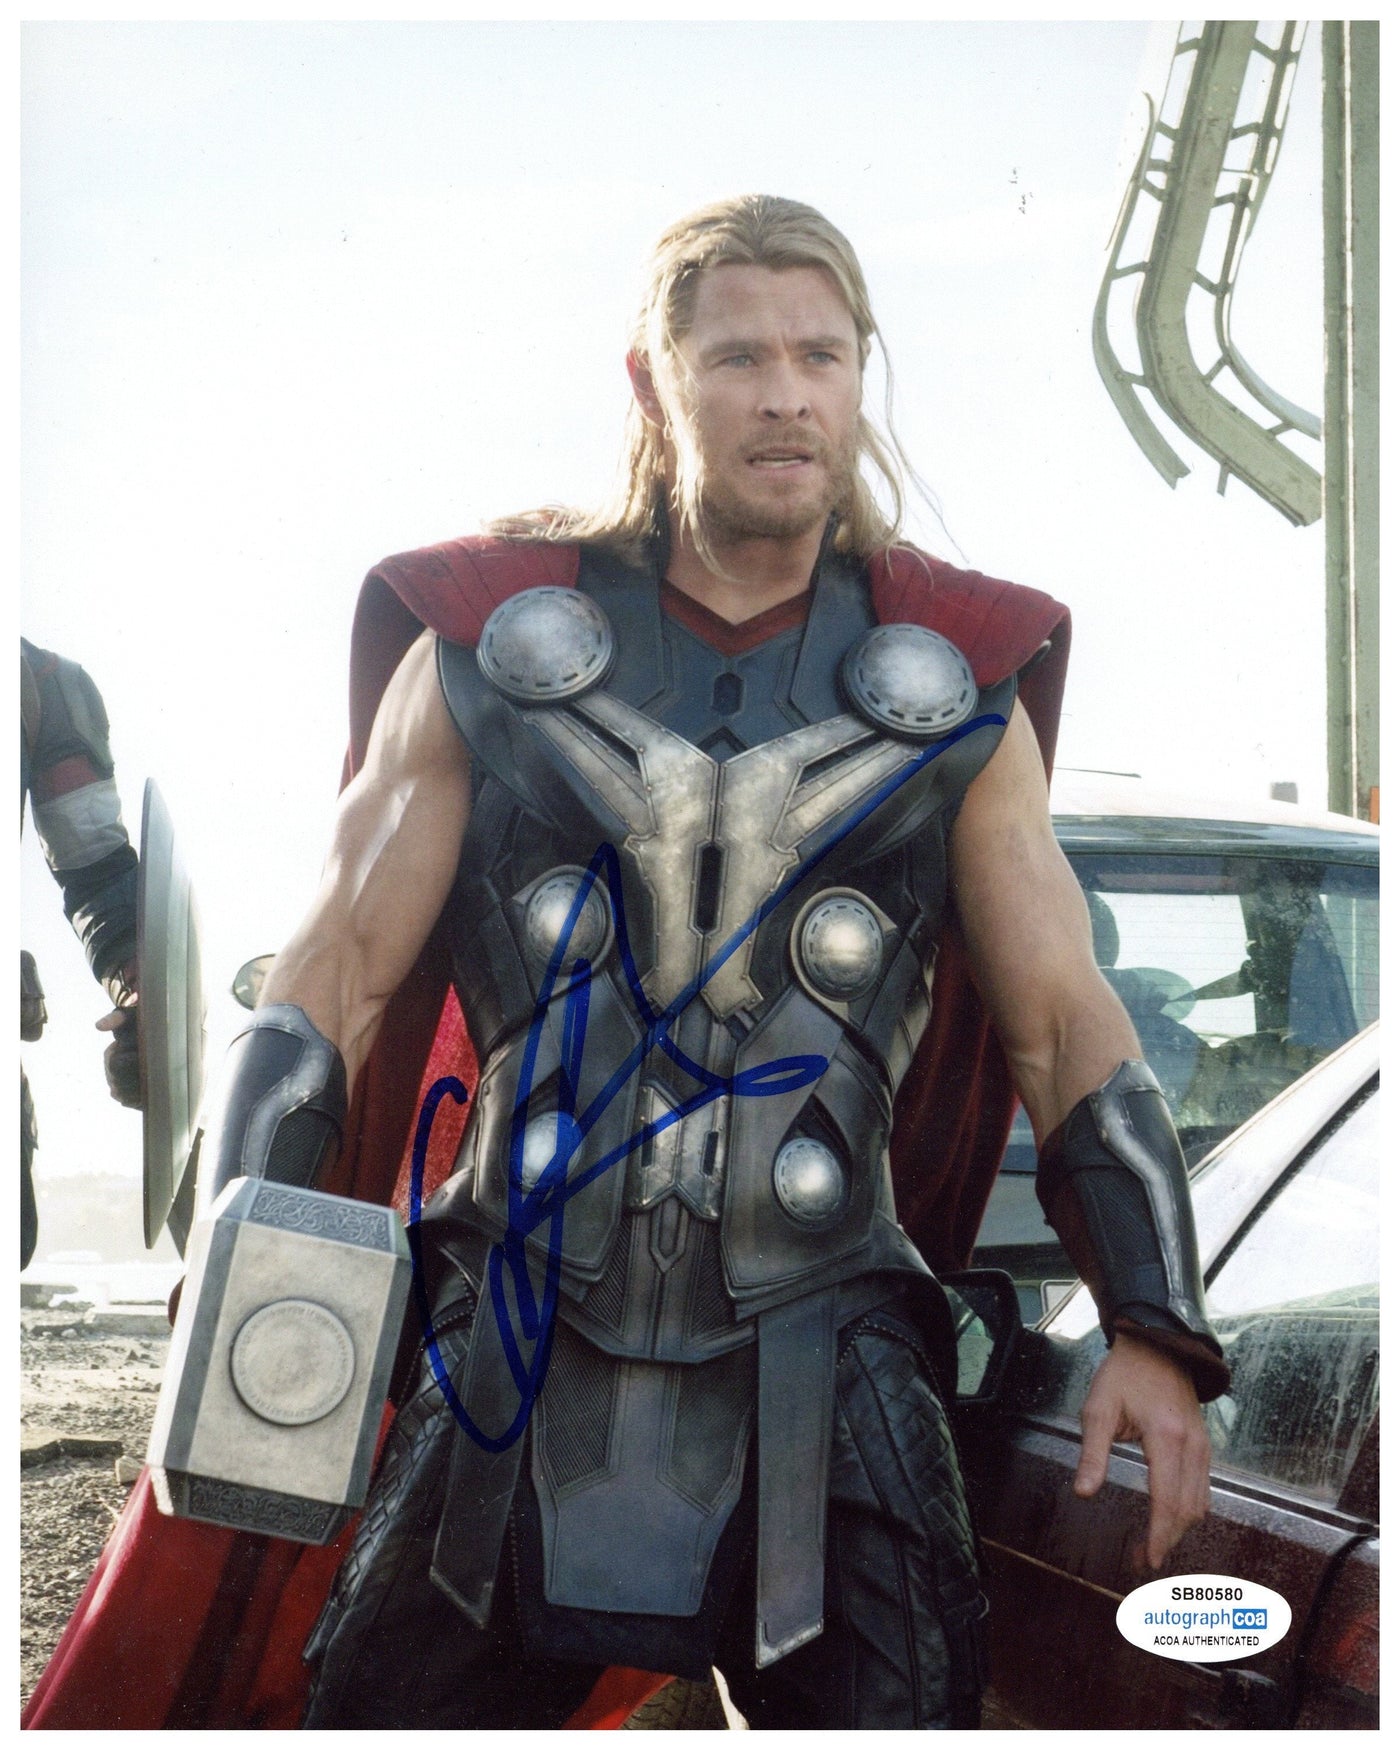 Chris Hemsworth Signed 8x10 Photo Marvel Thor Autographed ACOA #2